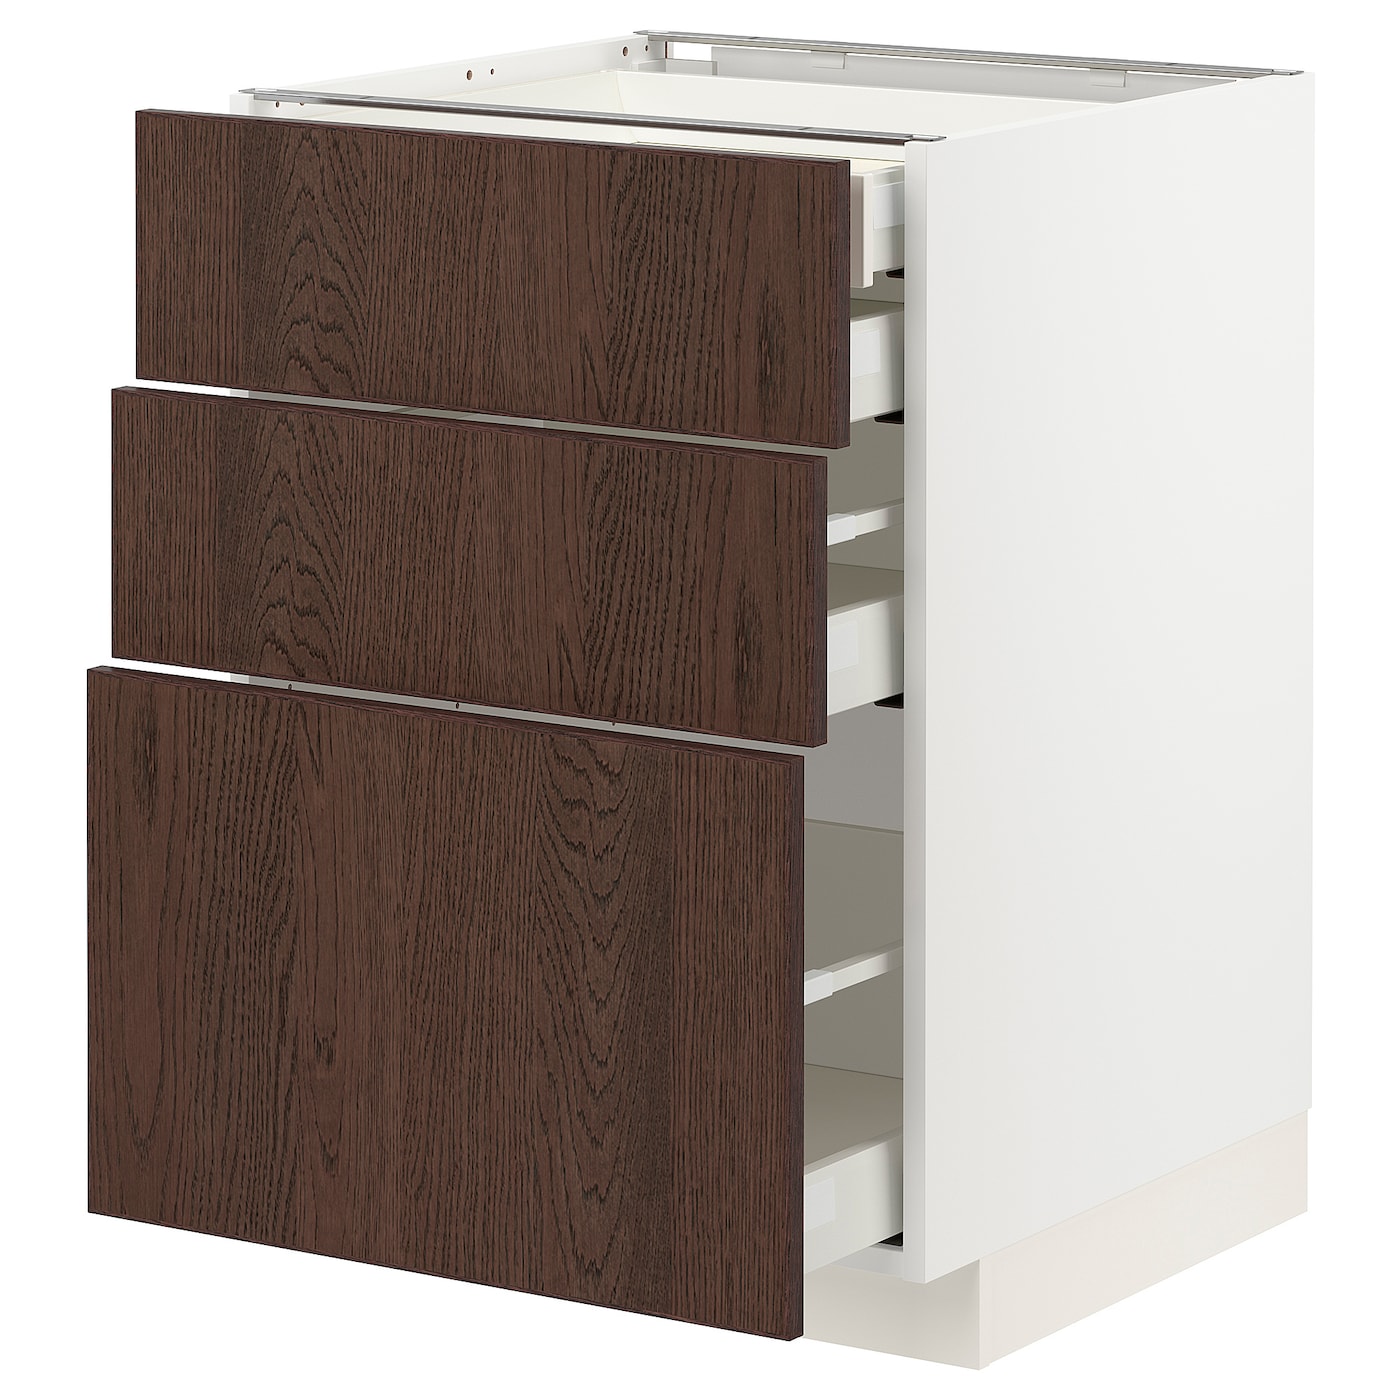 Напольный шкаф  - IKEA METOD MAXIMERA, 88x61,6x60см, белый/коричневый, МЕТОД МАКСИМЕРА ИКЕА